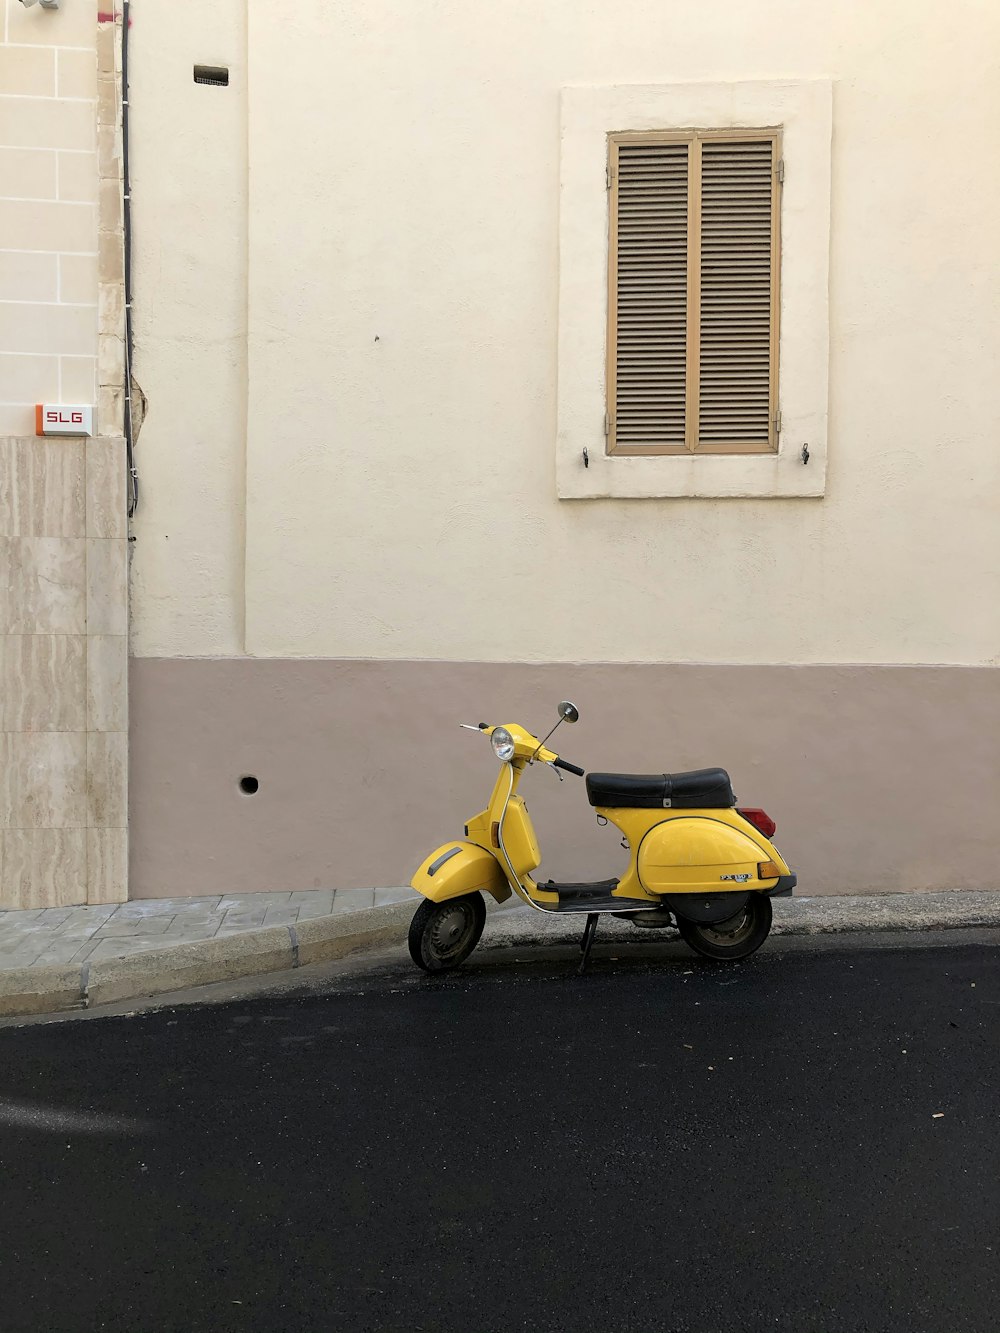 Gelber und schwarzer Motorroller tagsüber neben weißem Betongebäude geparkt